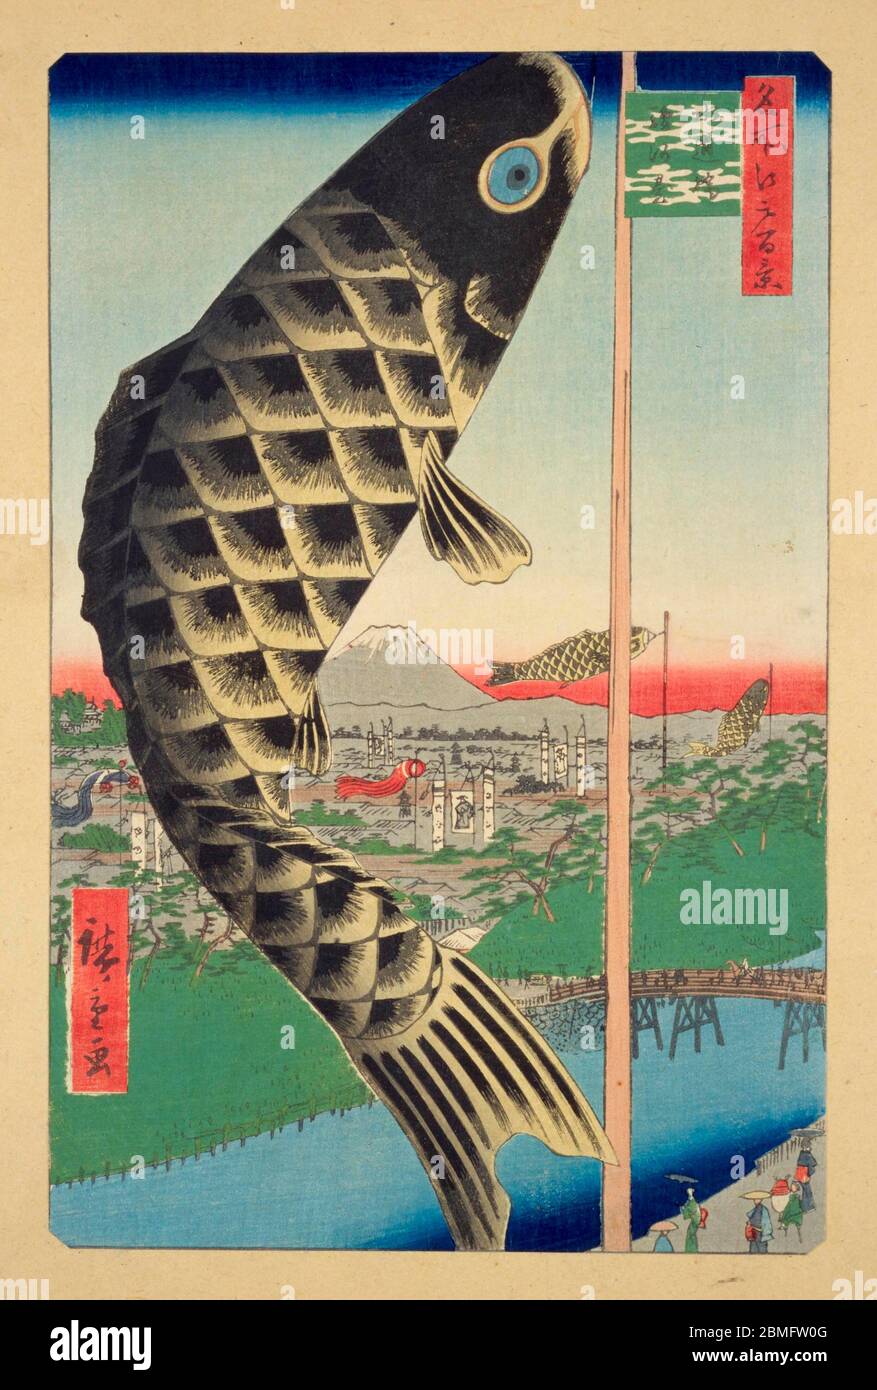 [ 1850s Japon - Koinobori Carp bannières ] — Koinobori (carp bannières) flotte dans le vent à Surugadai à Edo (Tokyo actuel), 1857 (Ansei 4). À l'arrière, on peut voir le Mont Fuji. Cette impression en bois est l'image 48 dans une centaine de vues célèbres d'Edo (名所江戸百景, Meisho Edo Hyakkei), une série créée par l'artiste ukiyoe Utagawa Hiroshige (歌川広重, 1797–1858). C'est l'une des 30 scènes d'été de la série. Titre: Pont Suidobashi et quartier Surugadai (水道橋駿河台, Suidobashi Surugadai) 19ième siècle vintage Ukiyoe imprimé de blocs de bois. Banque D'Images